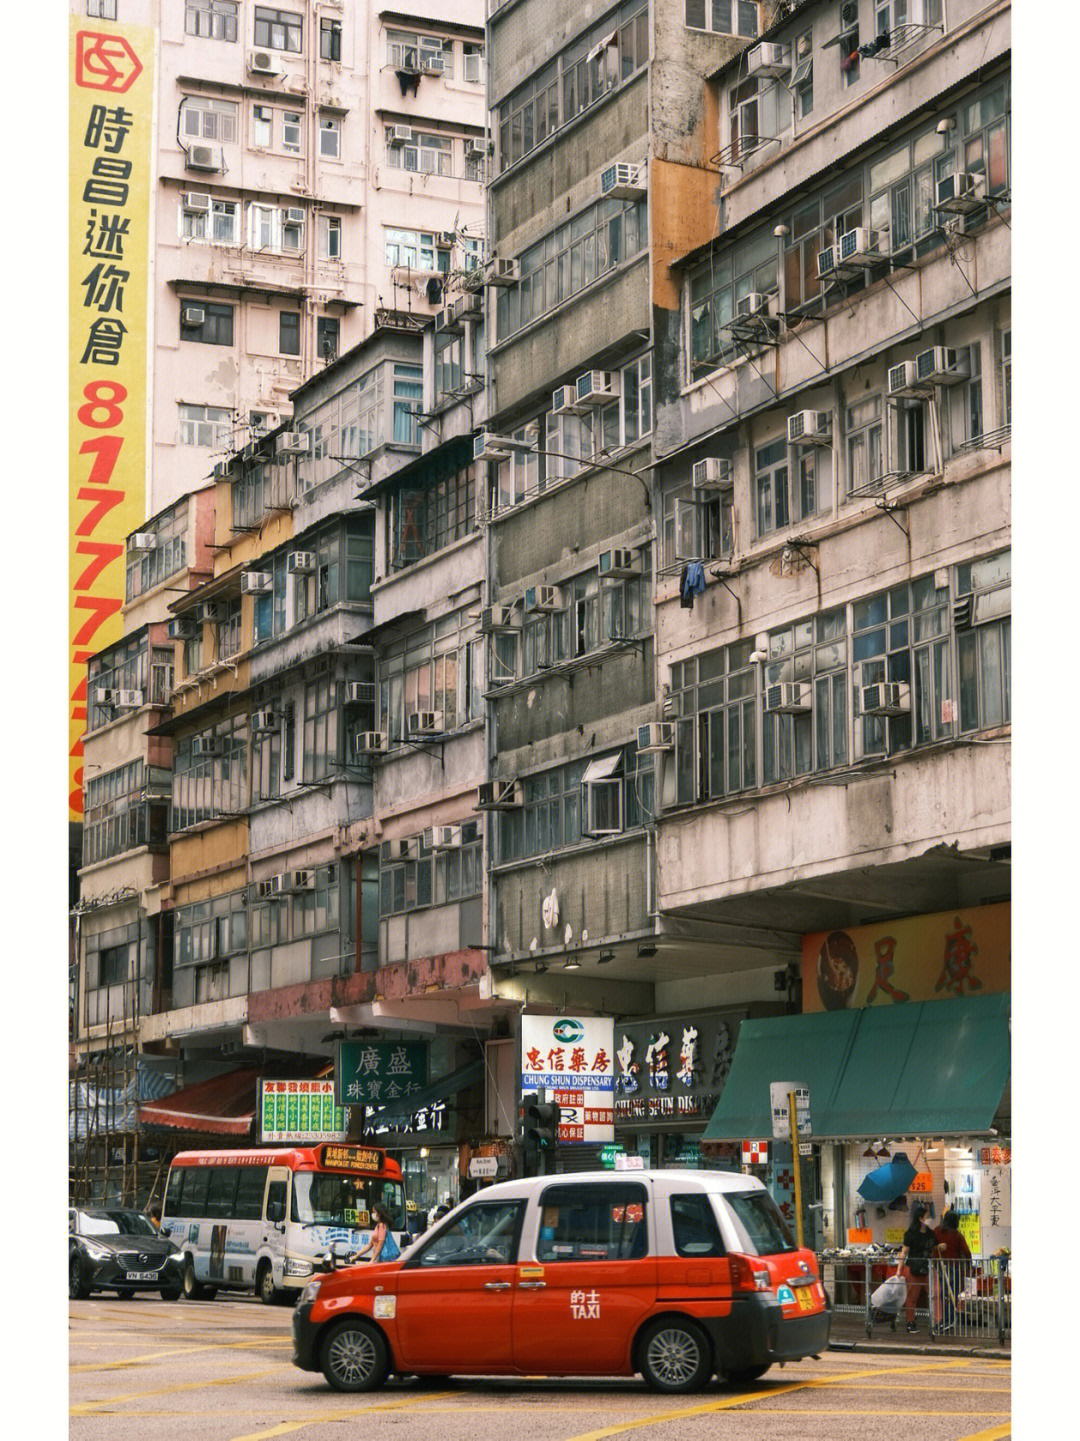 红蓝绿三色的店铺挡蓬,旧旧的唐楼,都是很有旧日香港的味道,置身其中